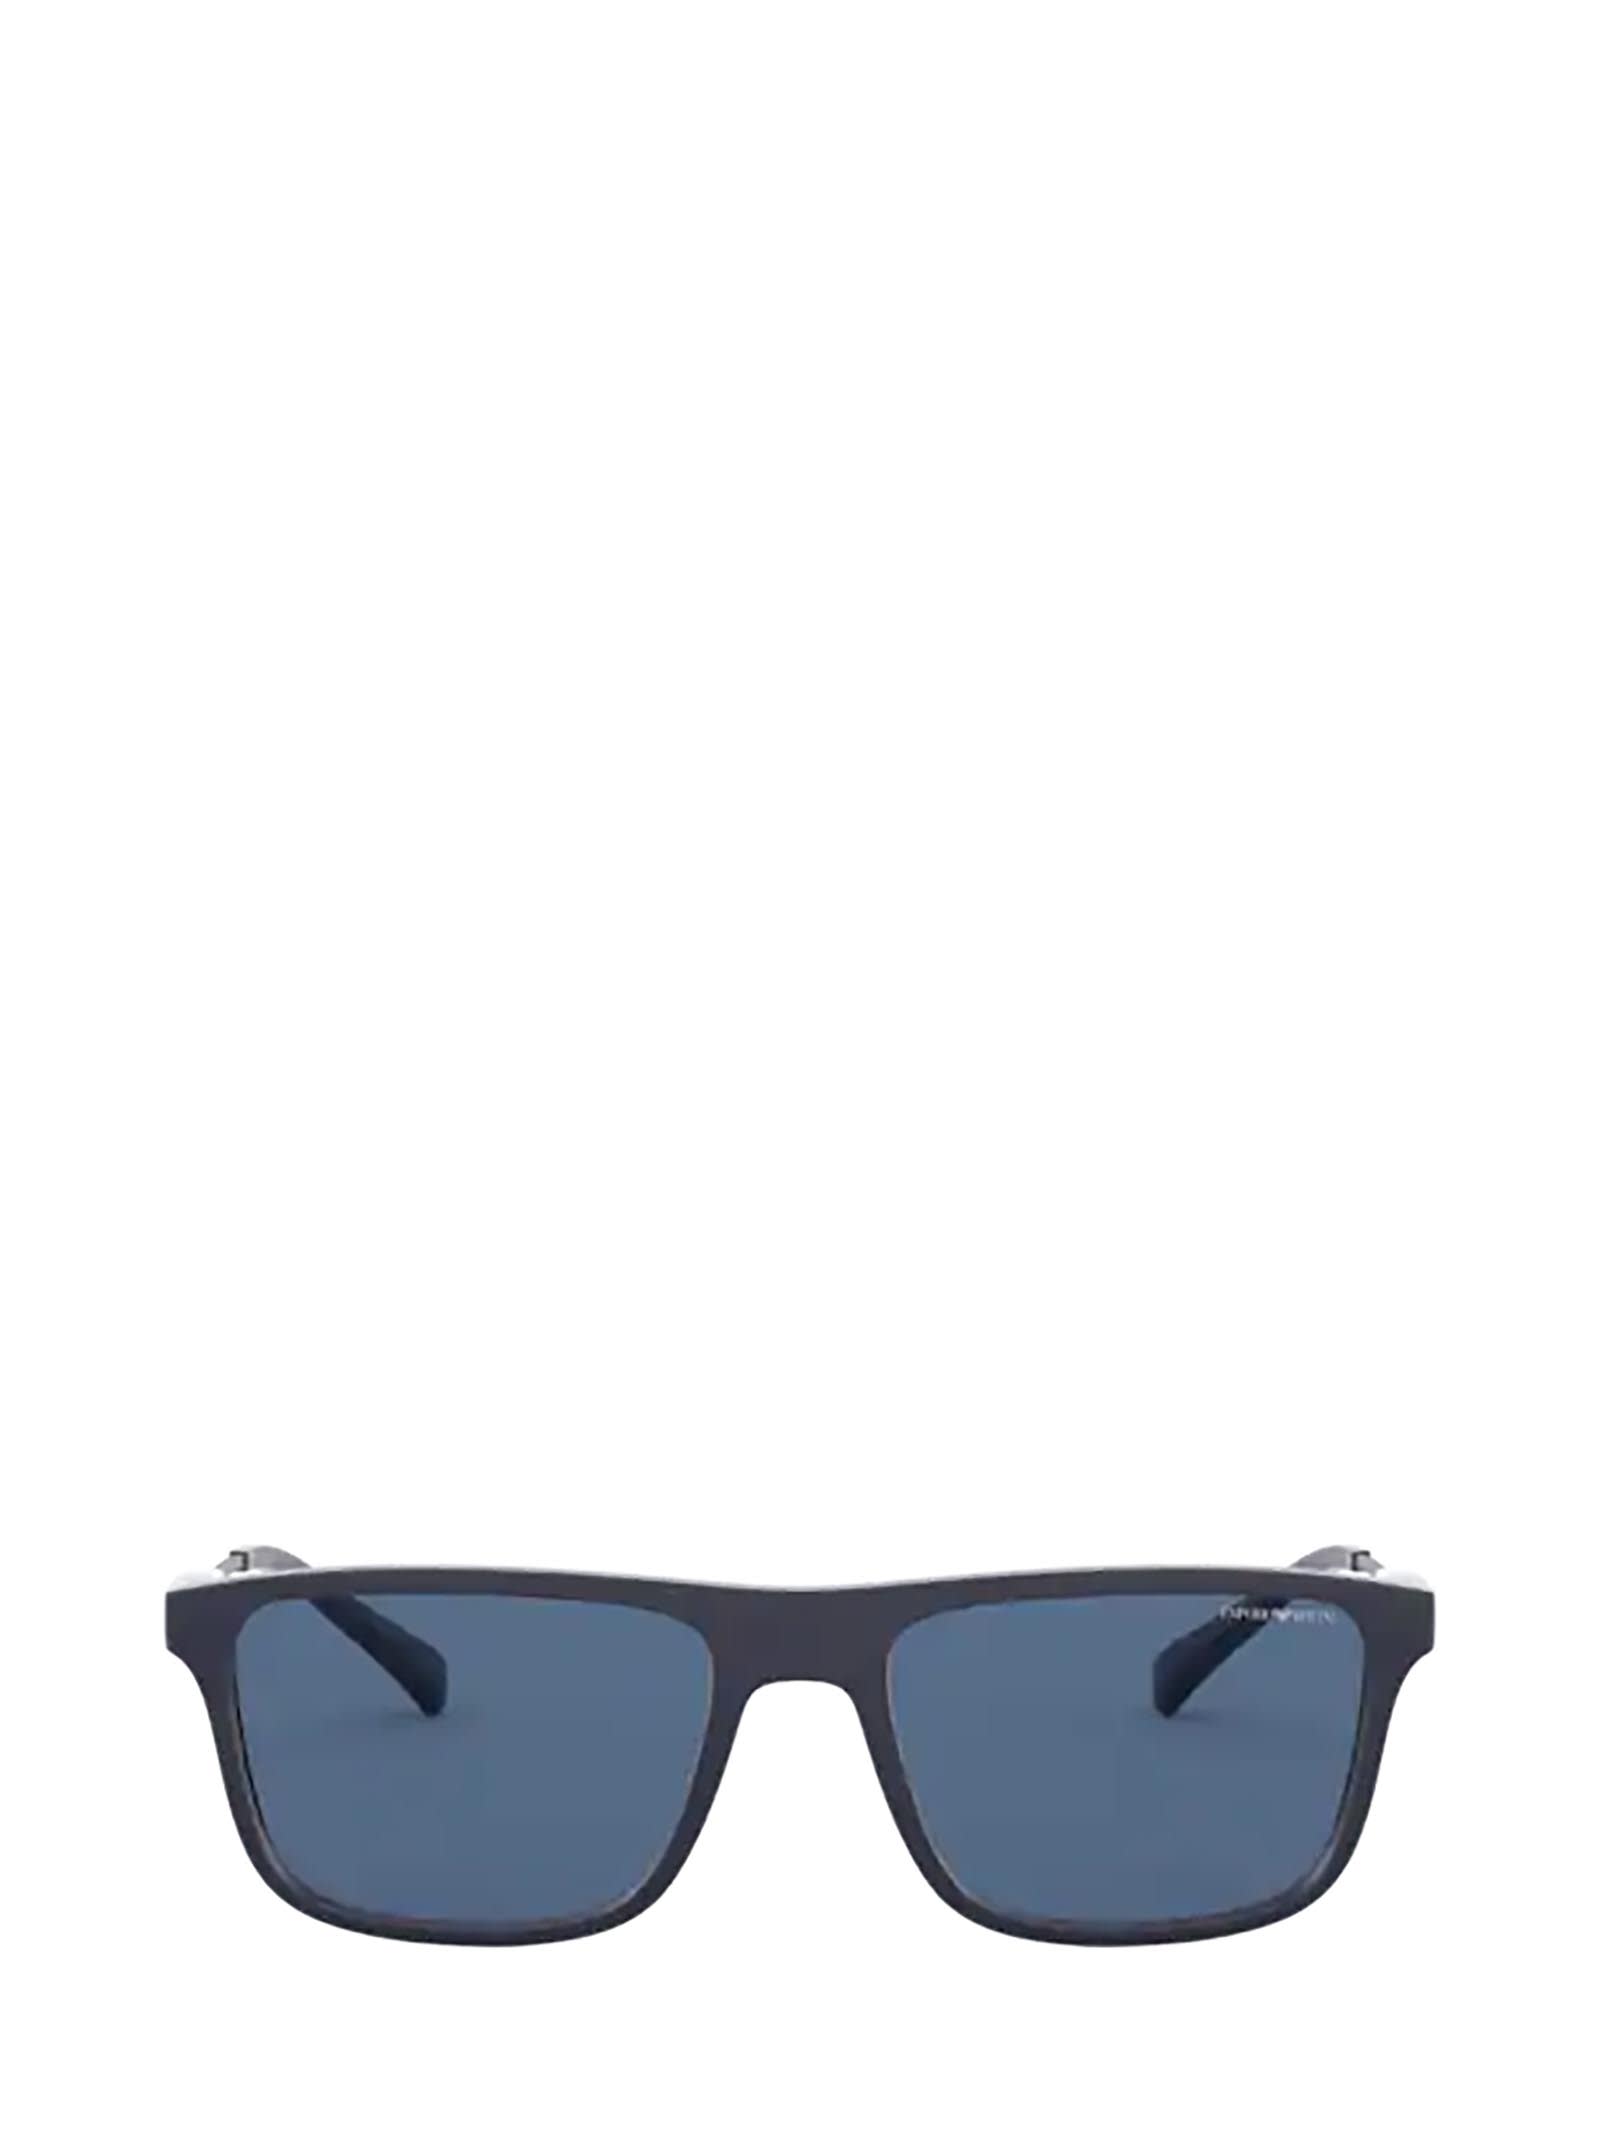 Emporio Armani Emporio Armani Ea4151 Matte Blue Sunglasses